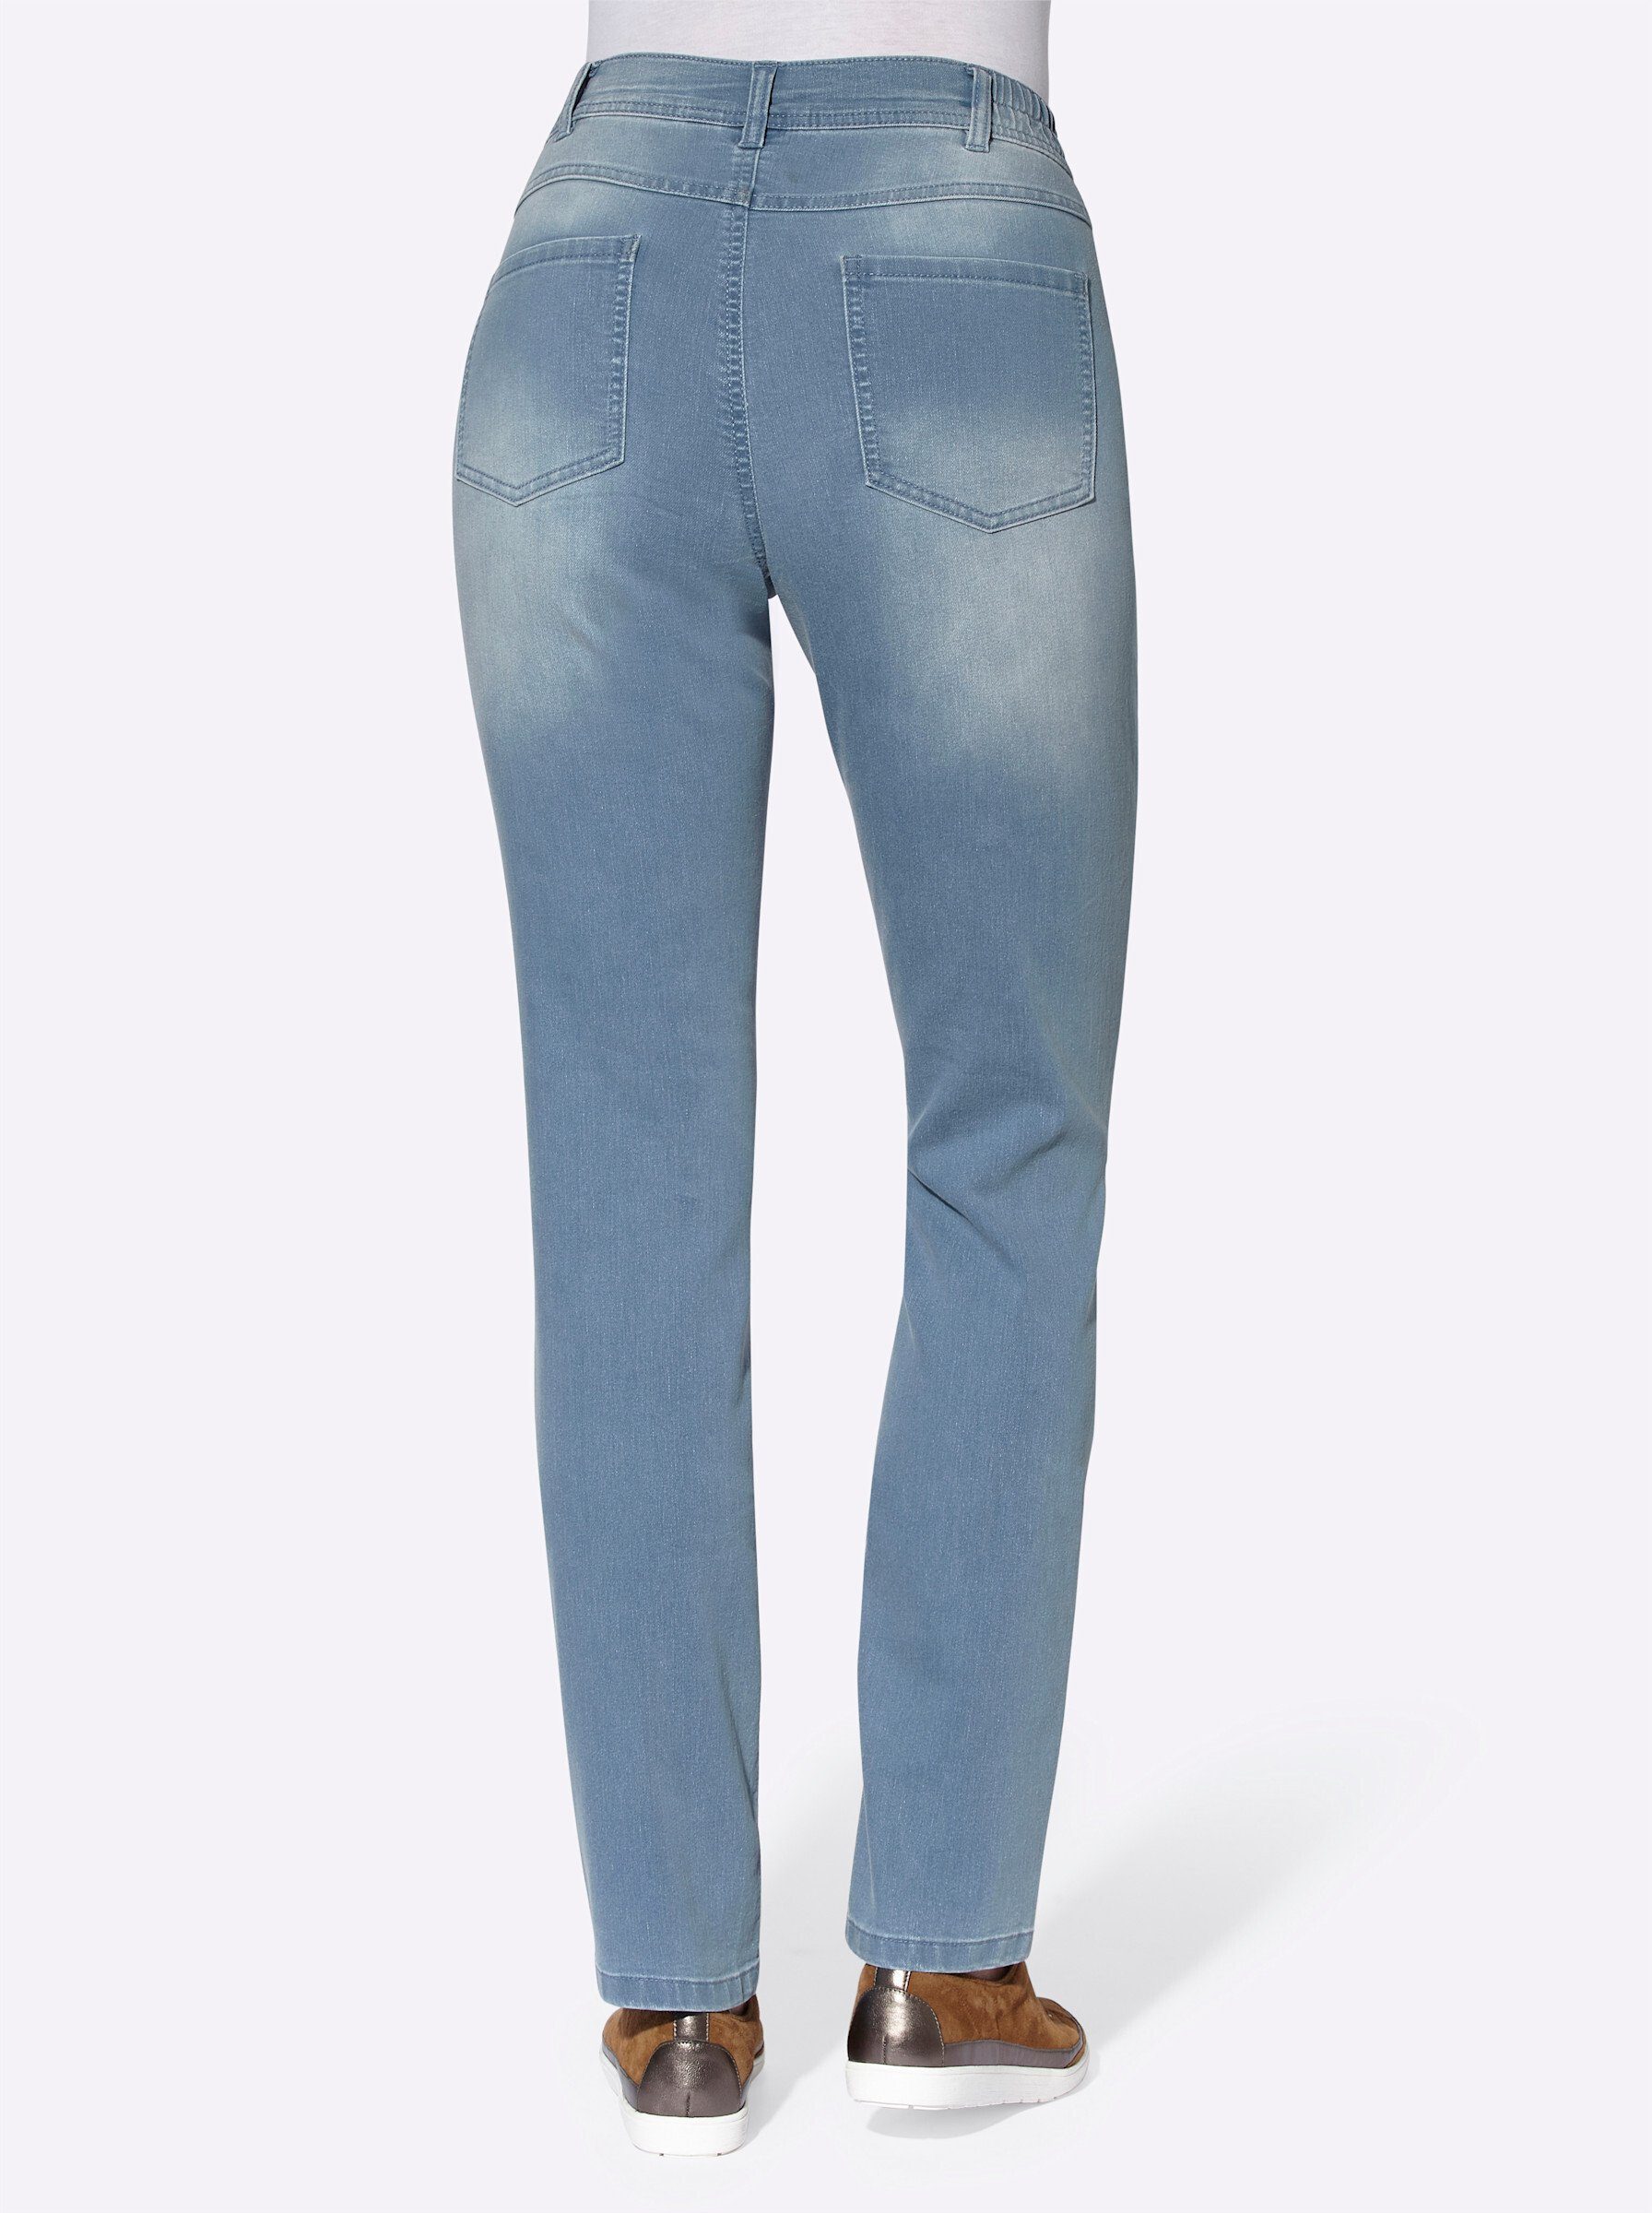 Bequeme an! Sieh blue-bleached Jeans